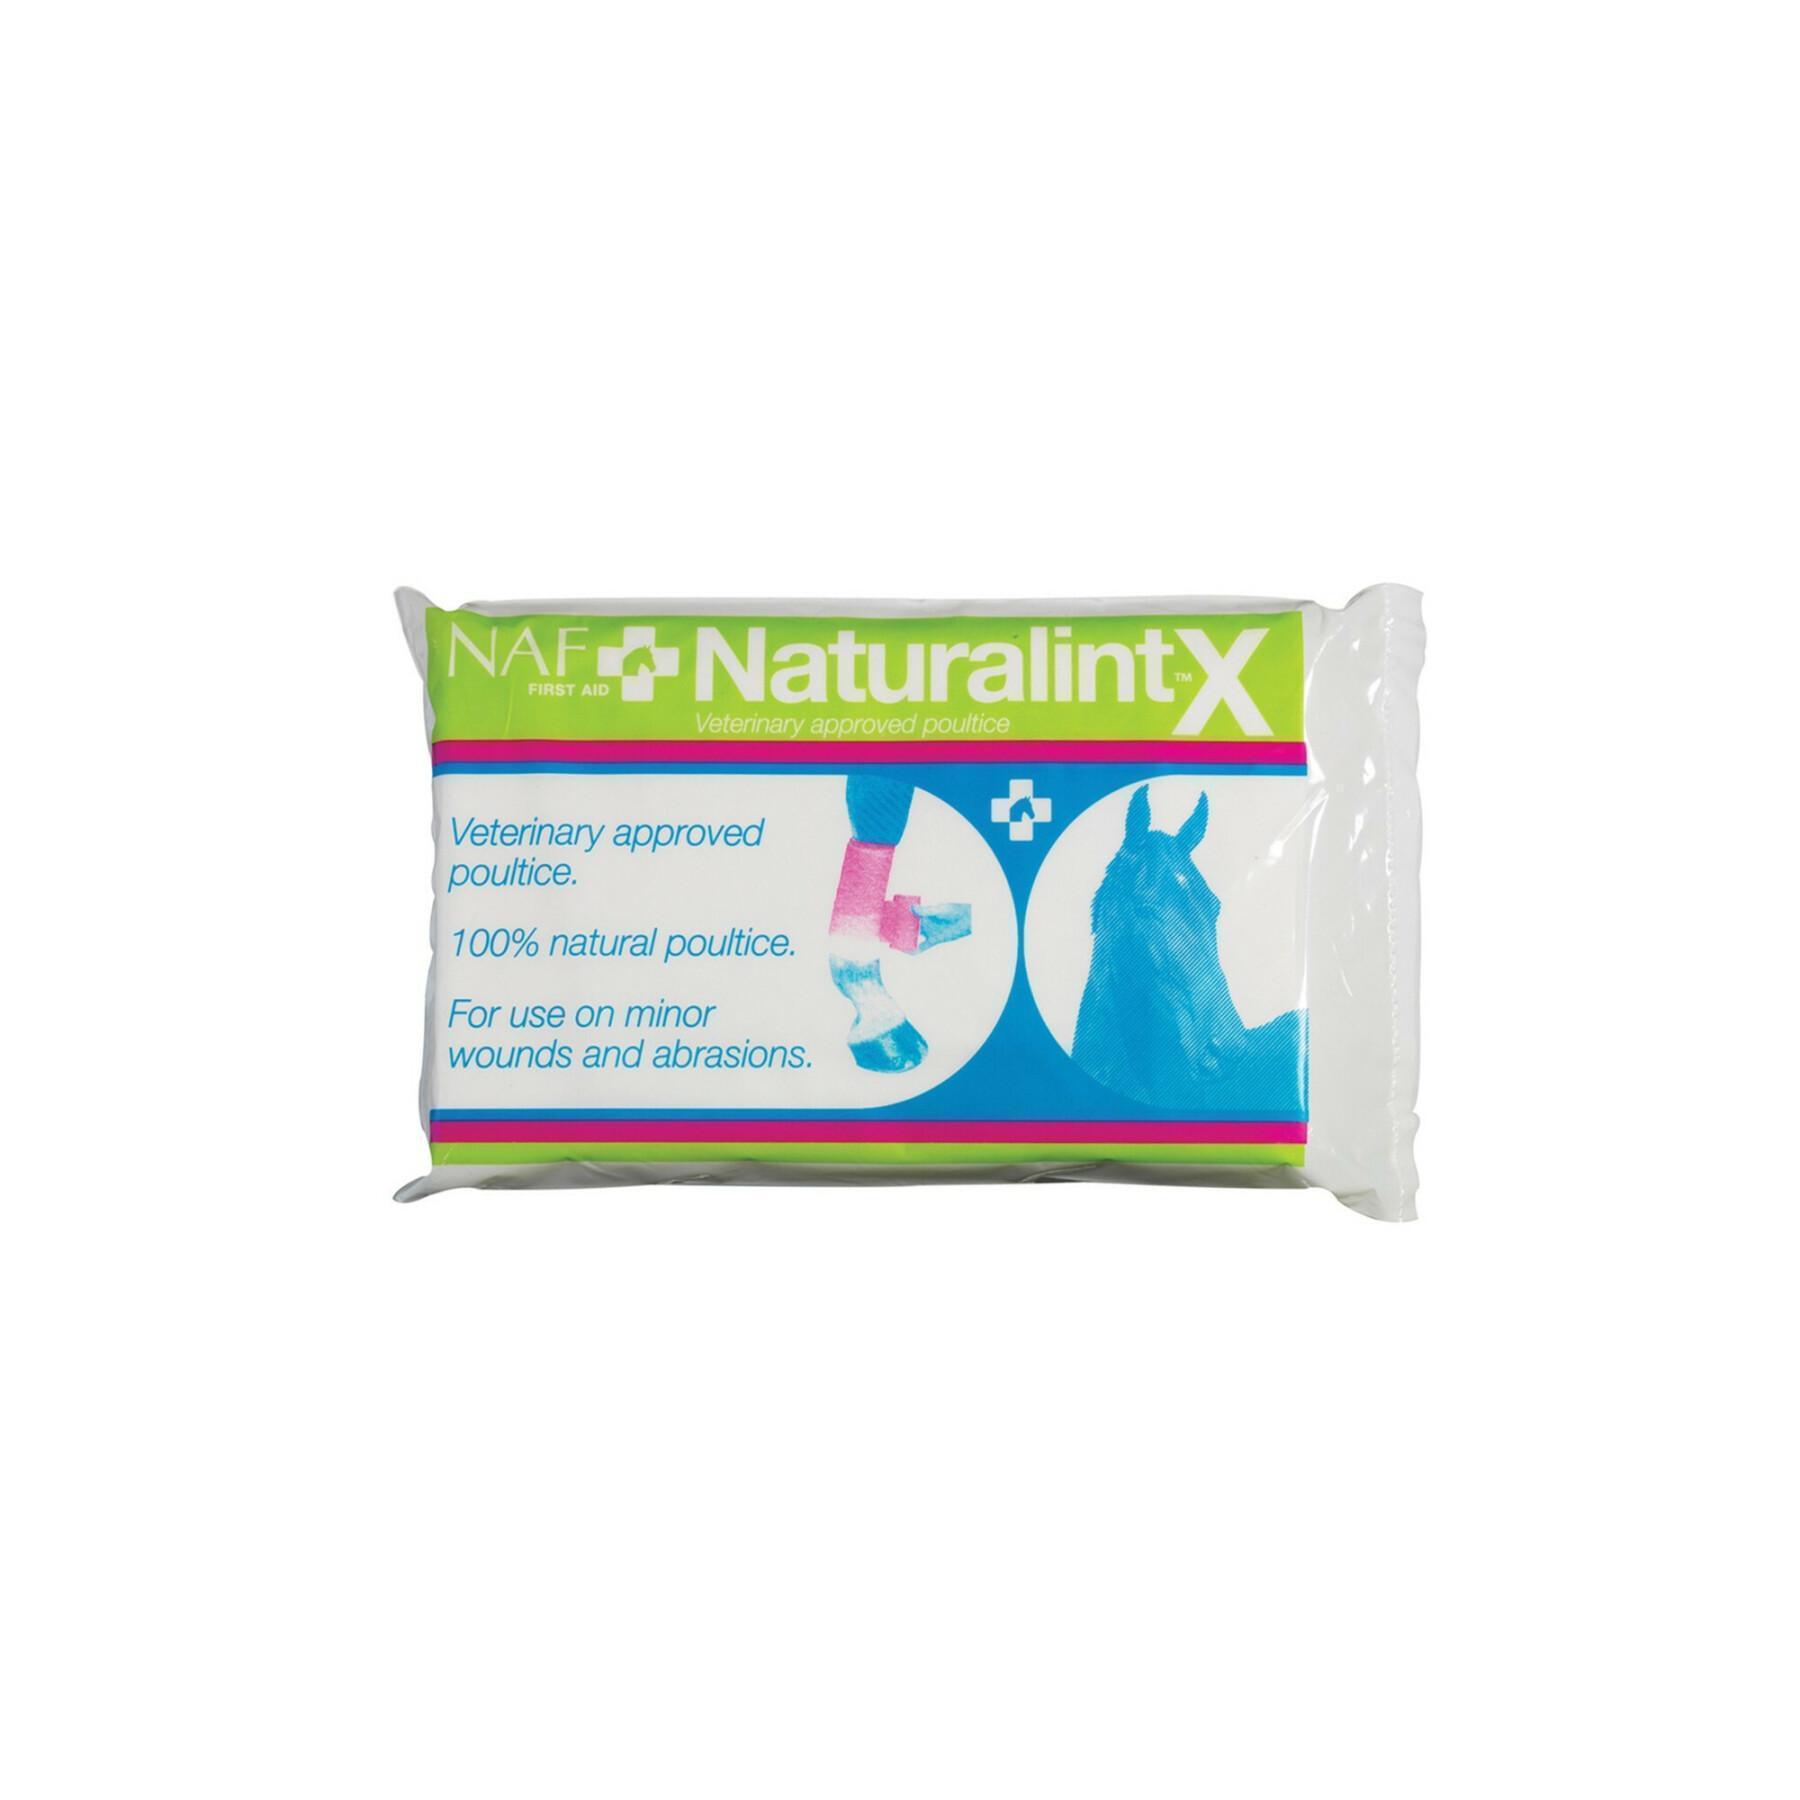 Impacco Naturalintx NAF